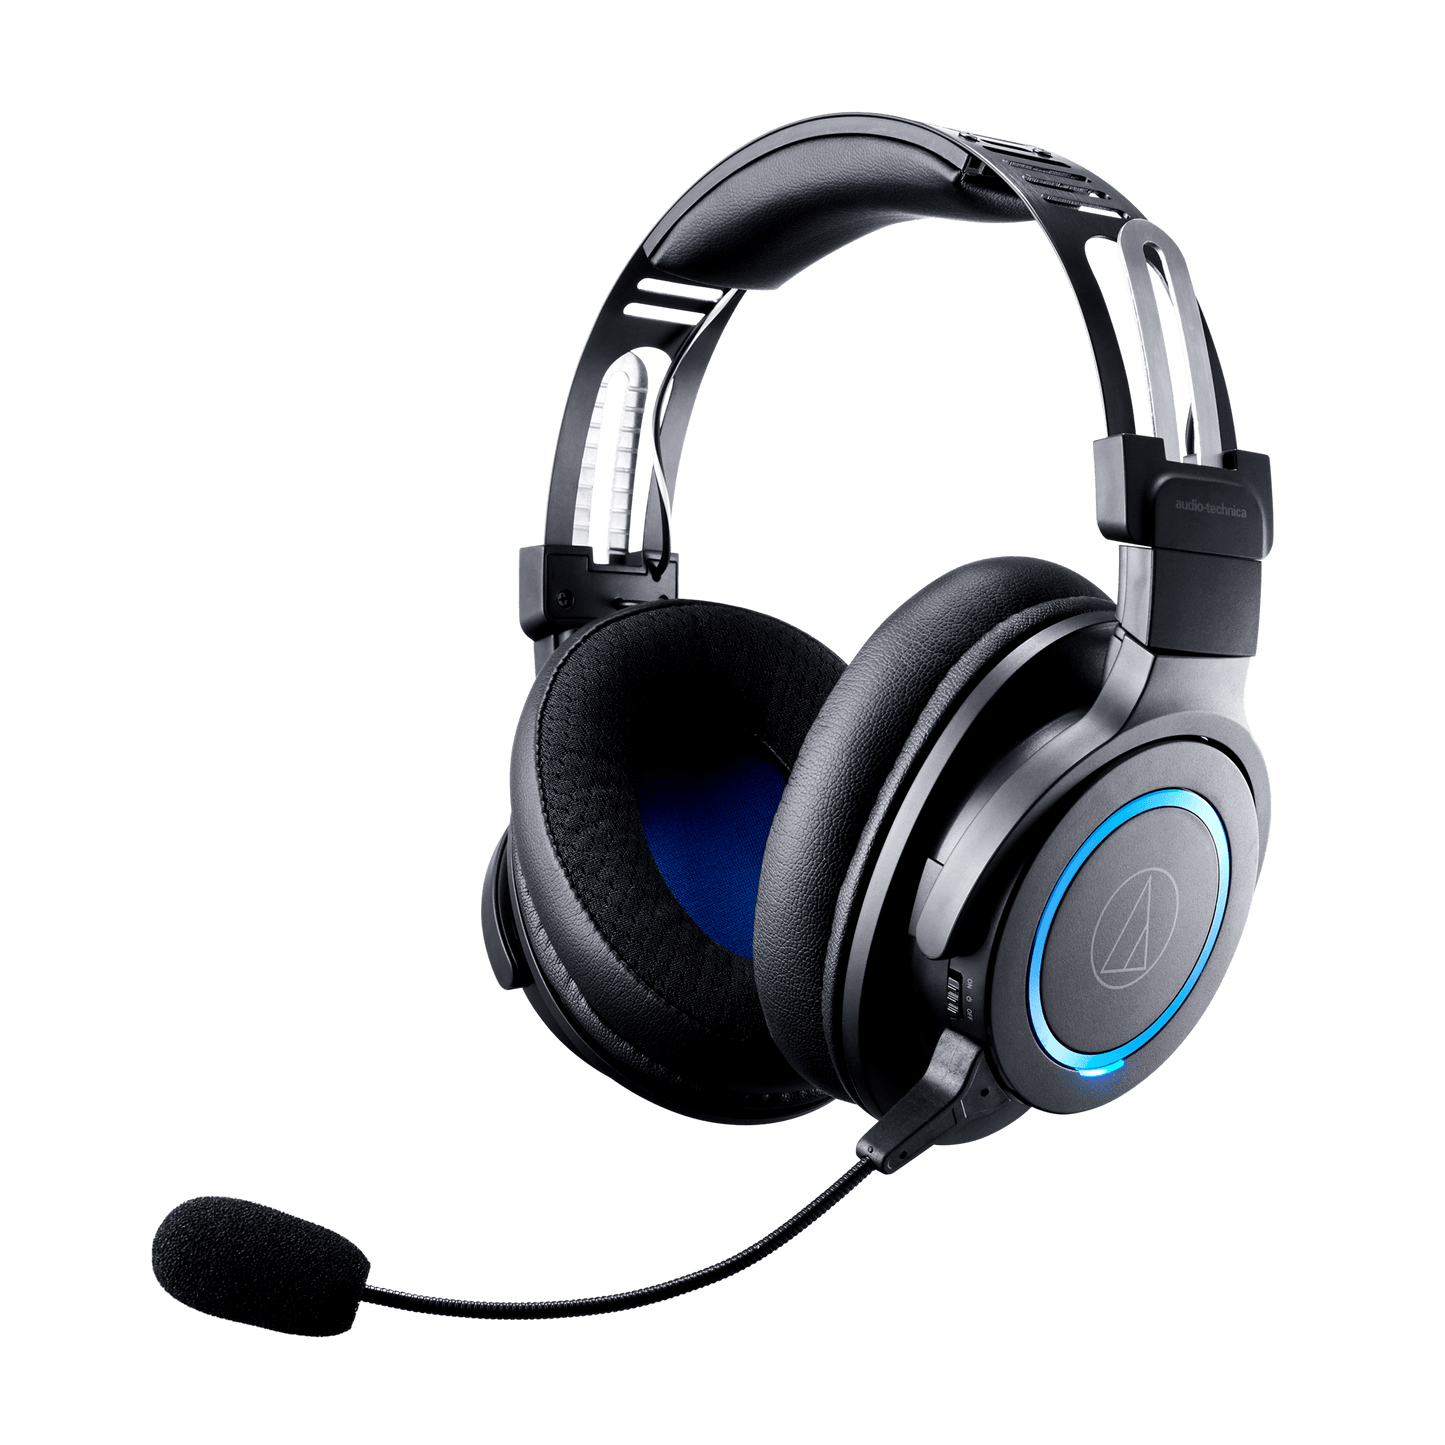 Audio-Technica ATH-G1WL Premium Gaming Headset